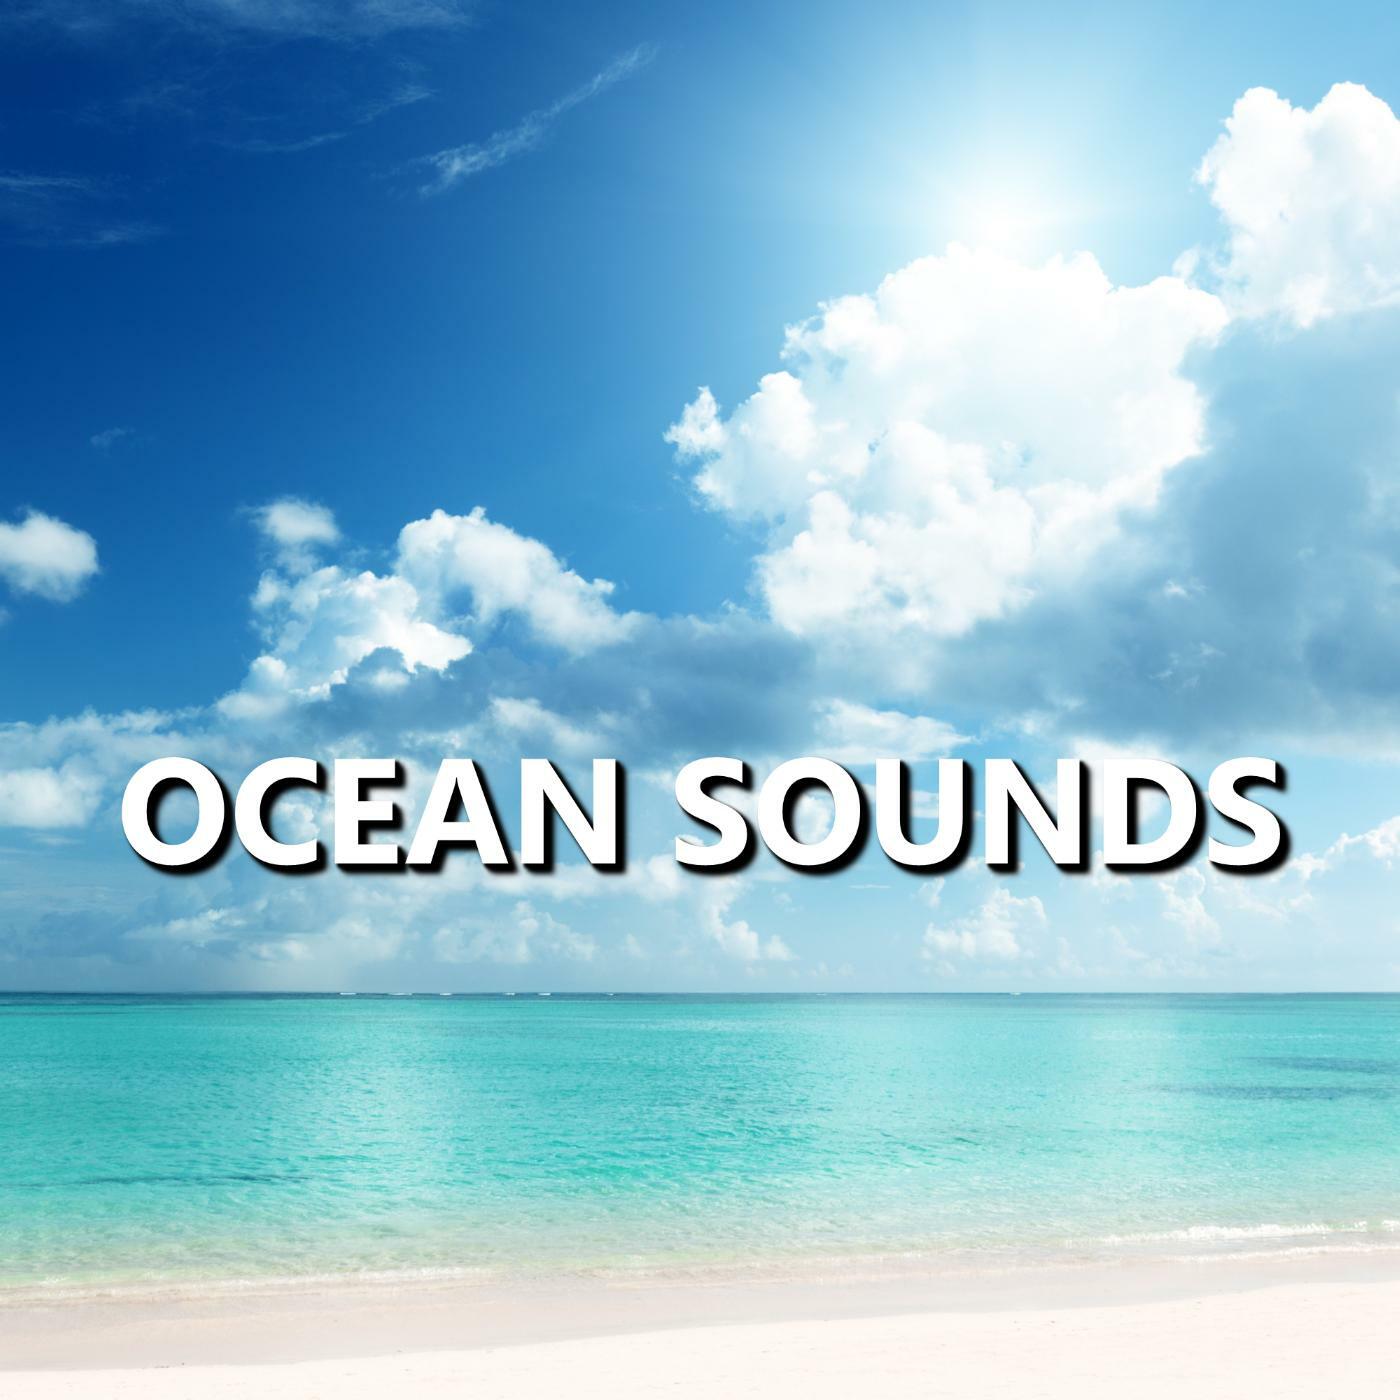 Ocean Sounds - Ocean Sounds | iHeart